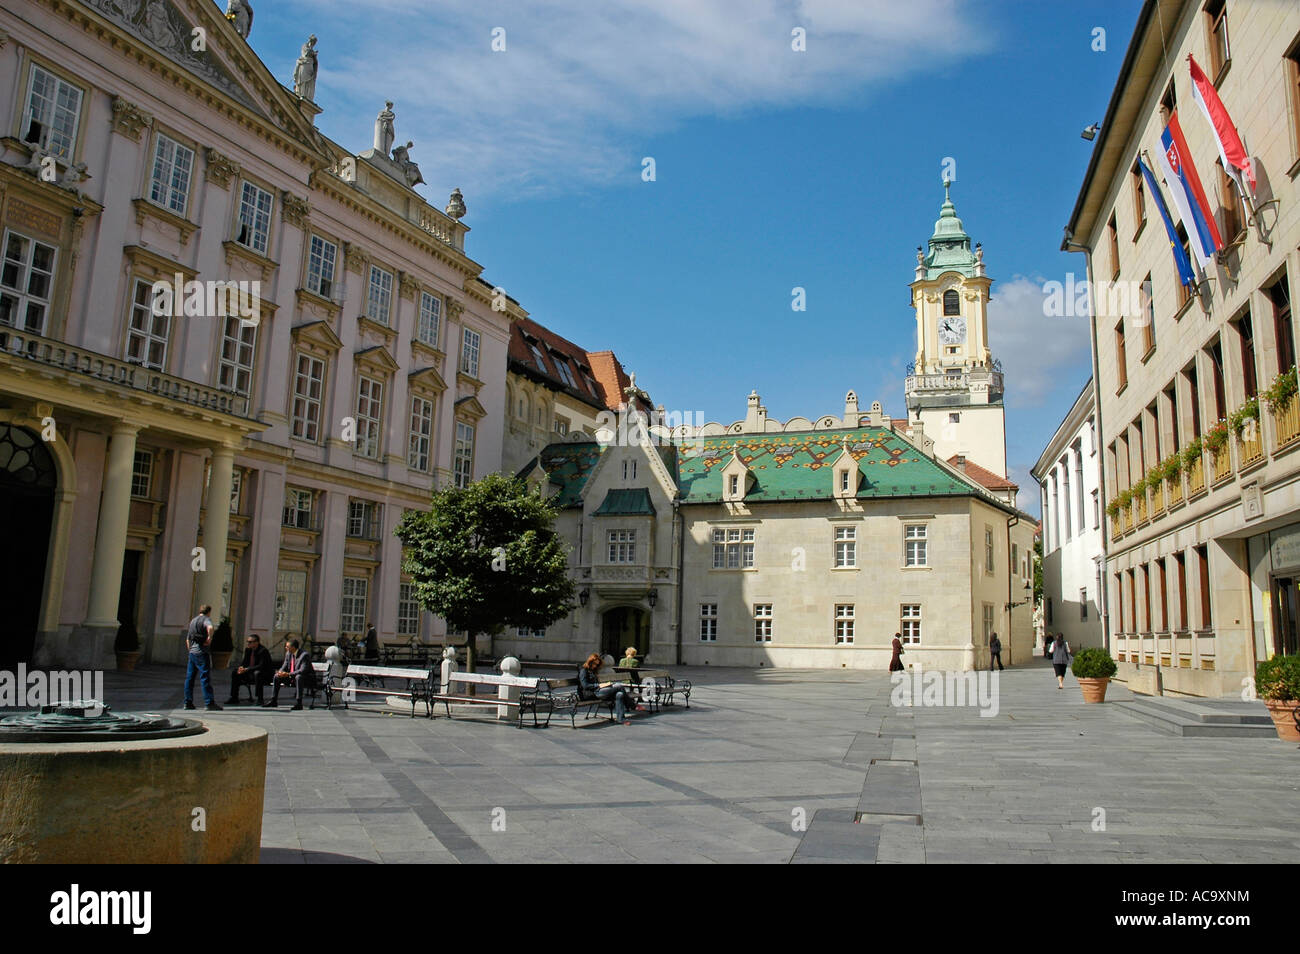 Primas von Apponyi Palast, Bratislava, Slowakei Stockfoto